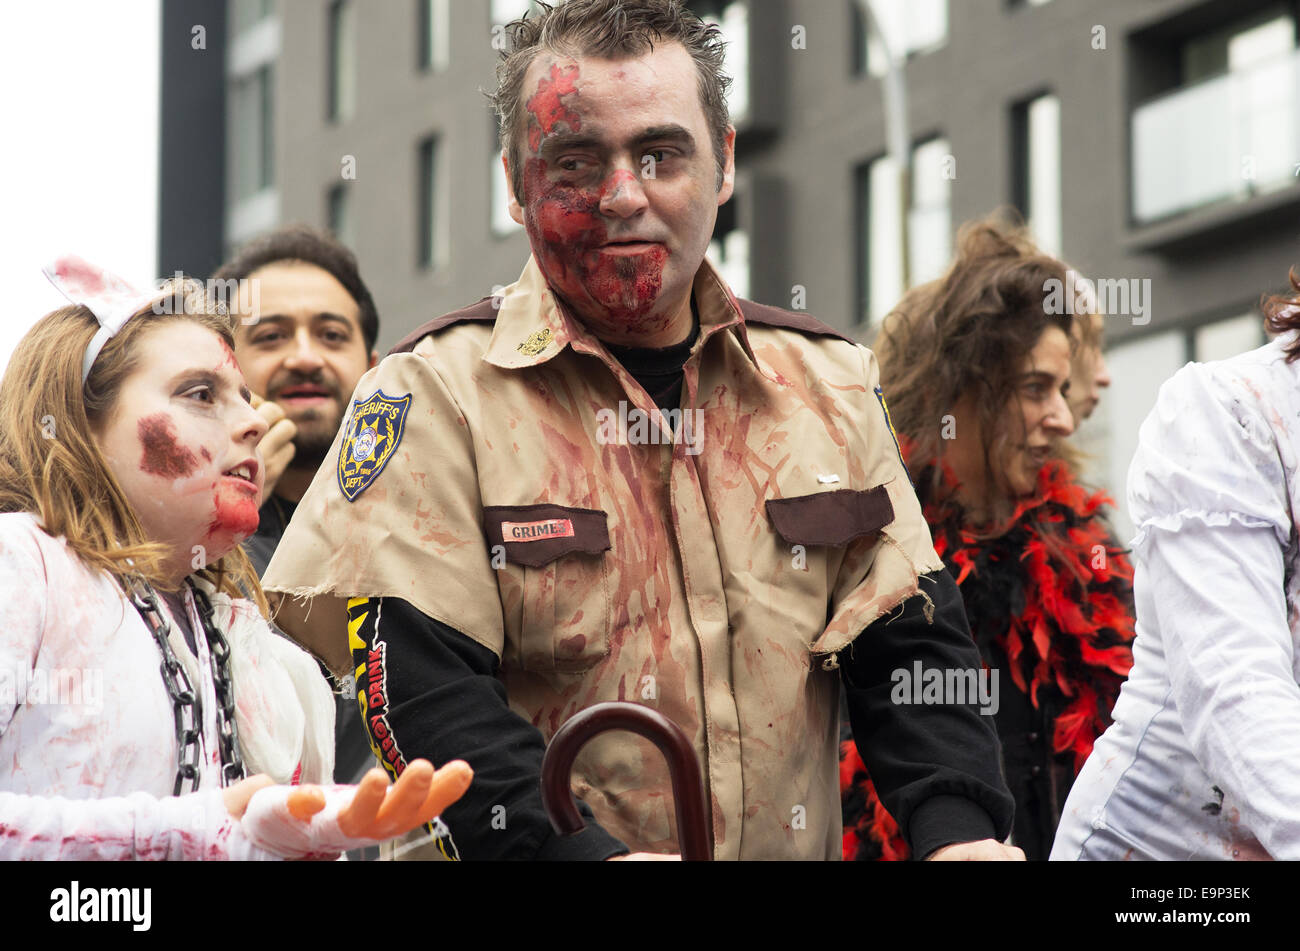 Promenade autour de participants déguisés en zombies et avons zombie Zombie Walk à Montréal maquillage édition 2014 Banque D'Images